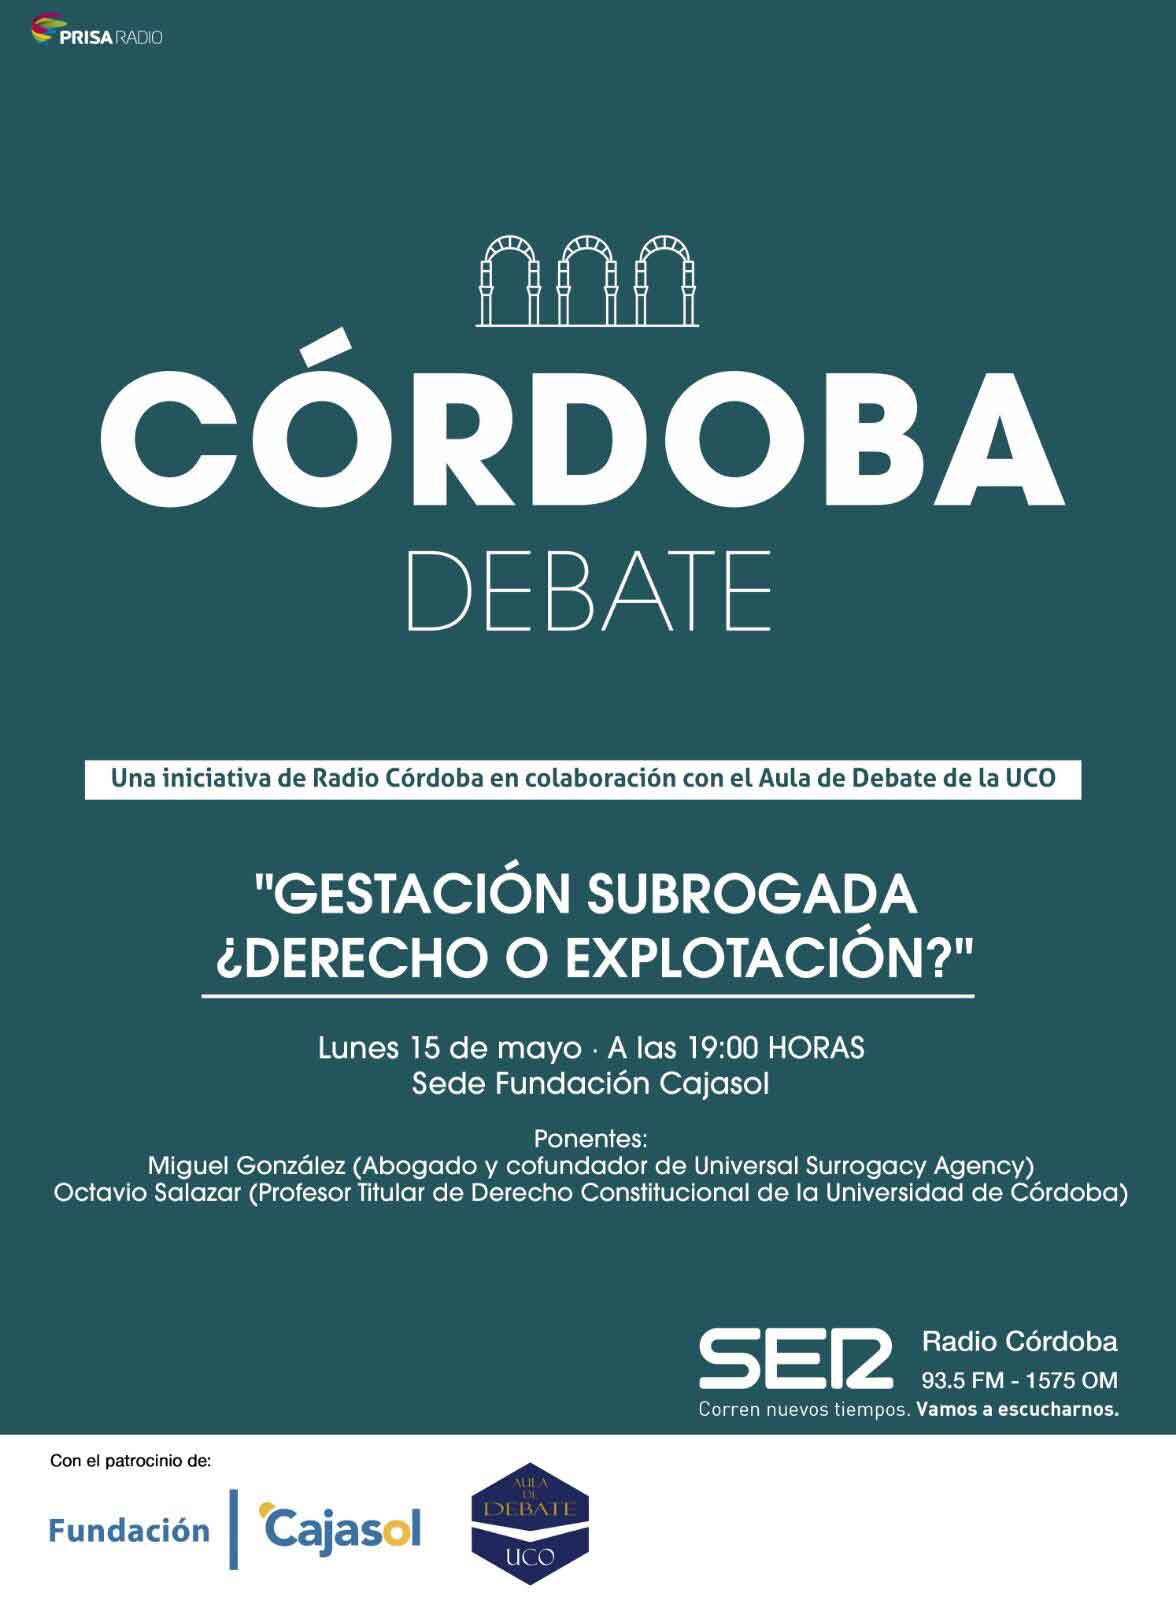 Cartel que anuncia 'Córdoba Debate' sobre Gestación Subrogada en la Fundación Cajasol